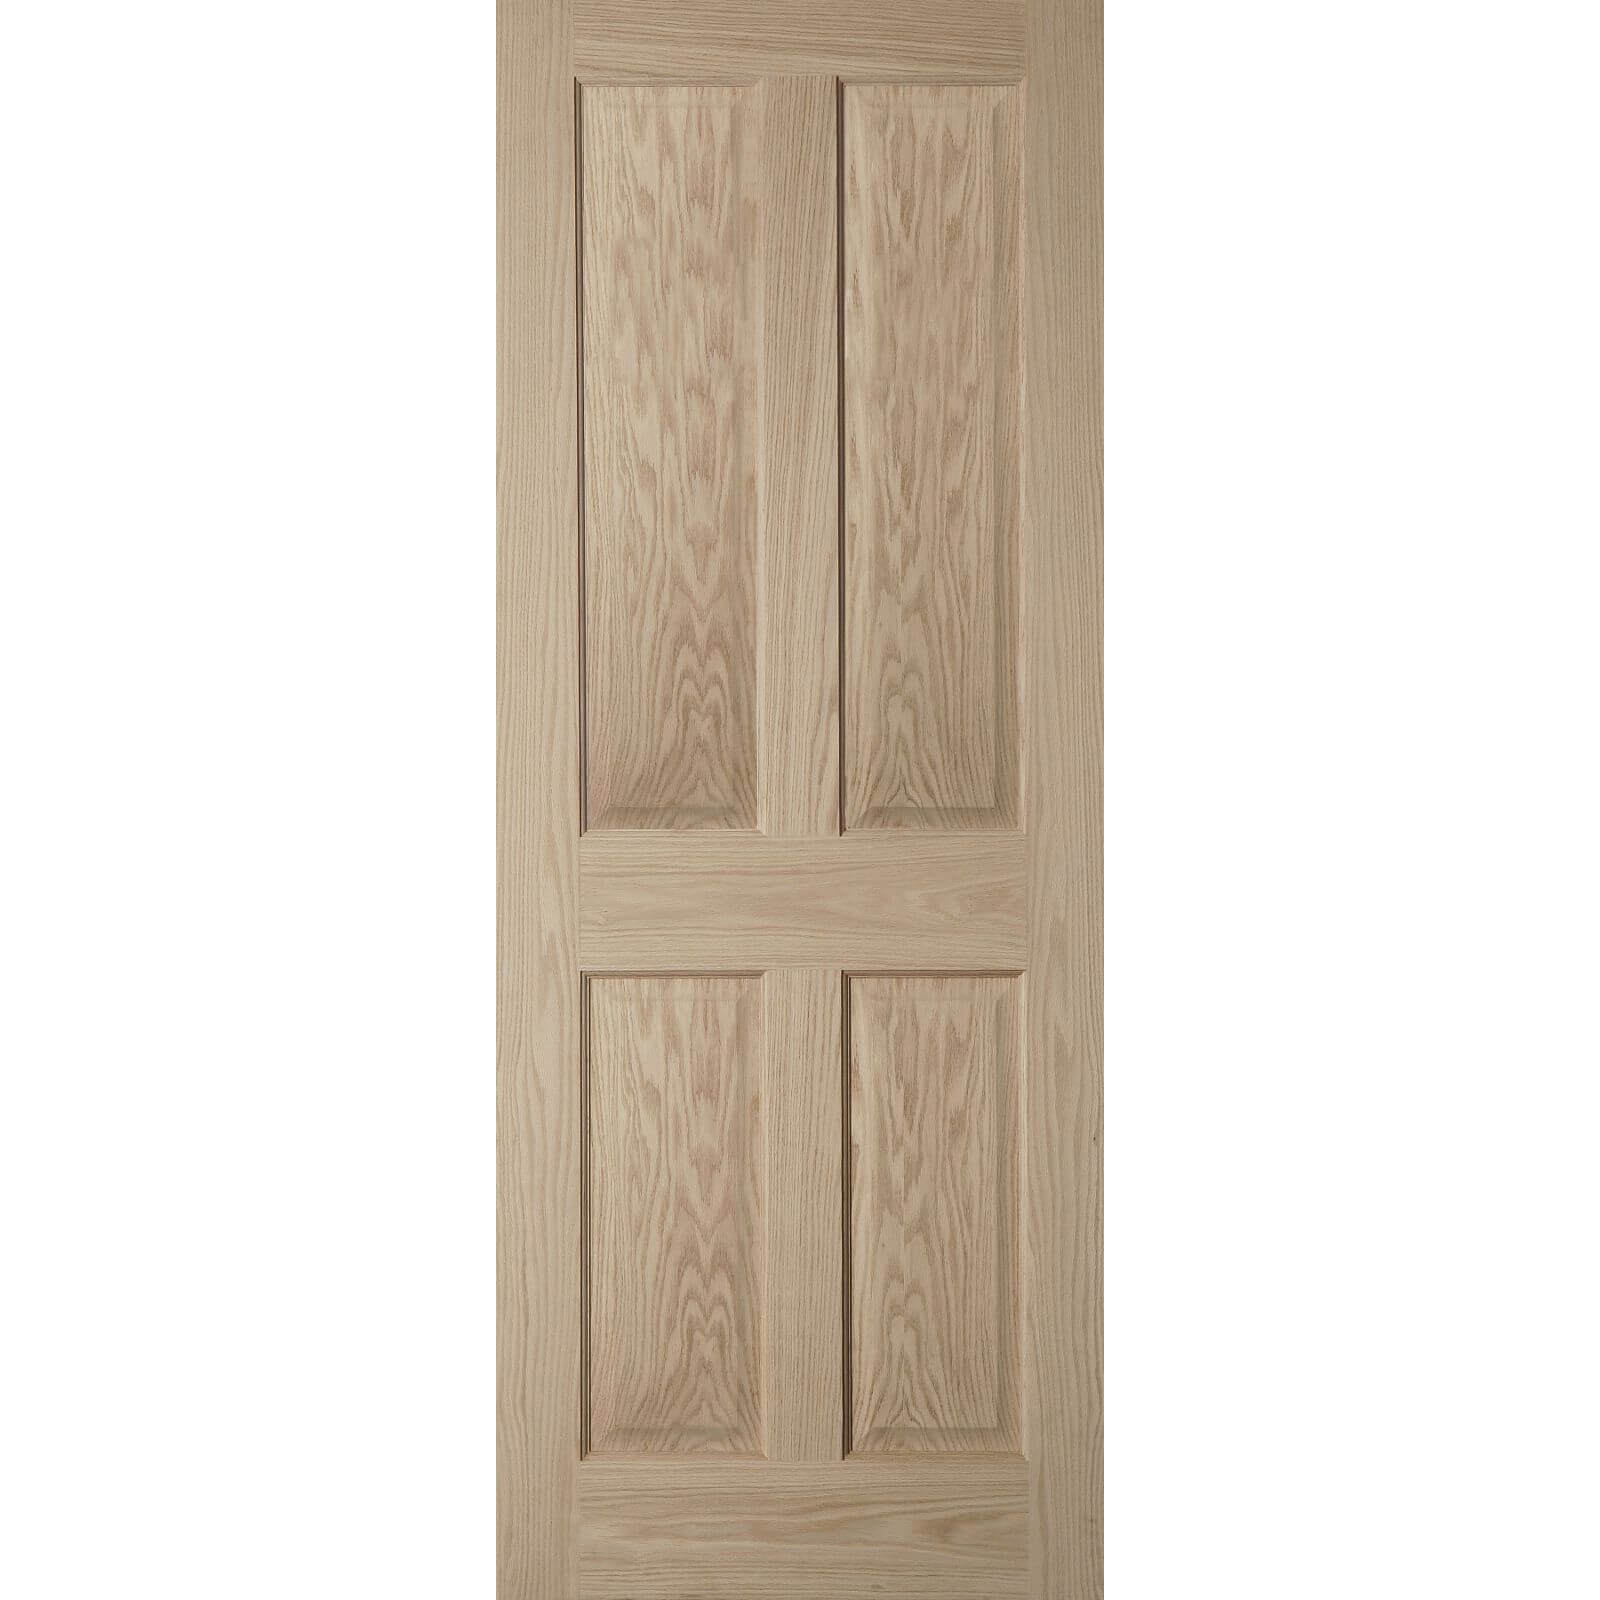 Photo of 4 Panel Oak Veneer Fire Door - 726mm Wide